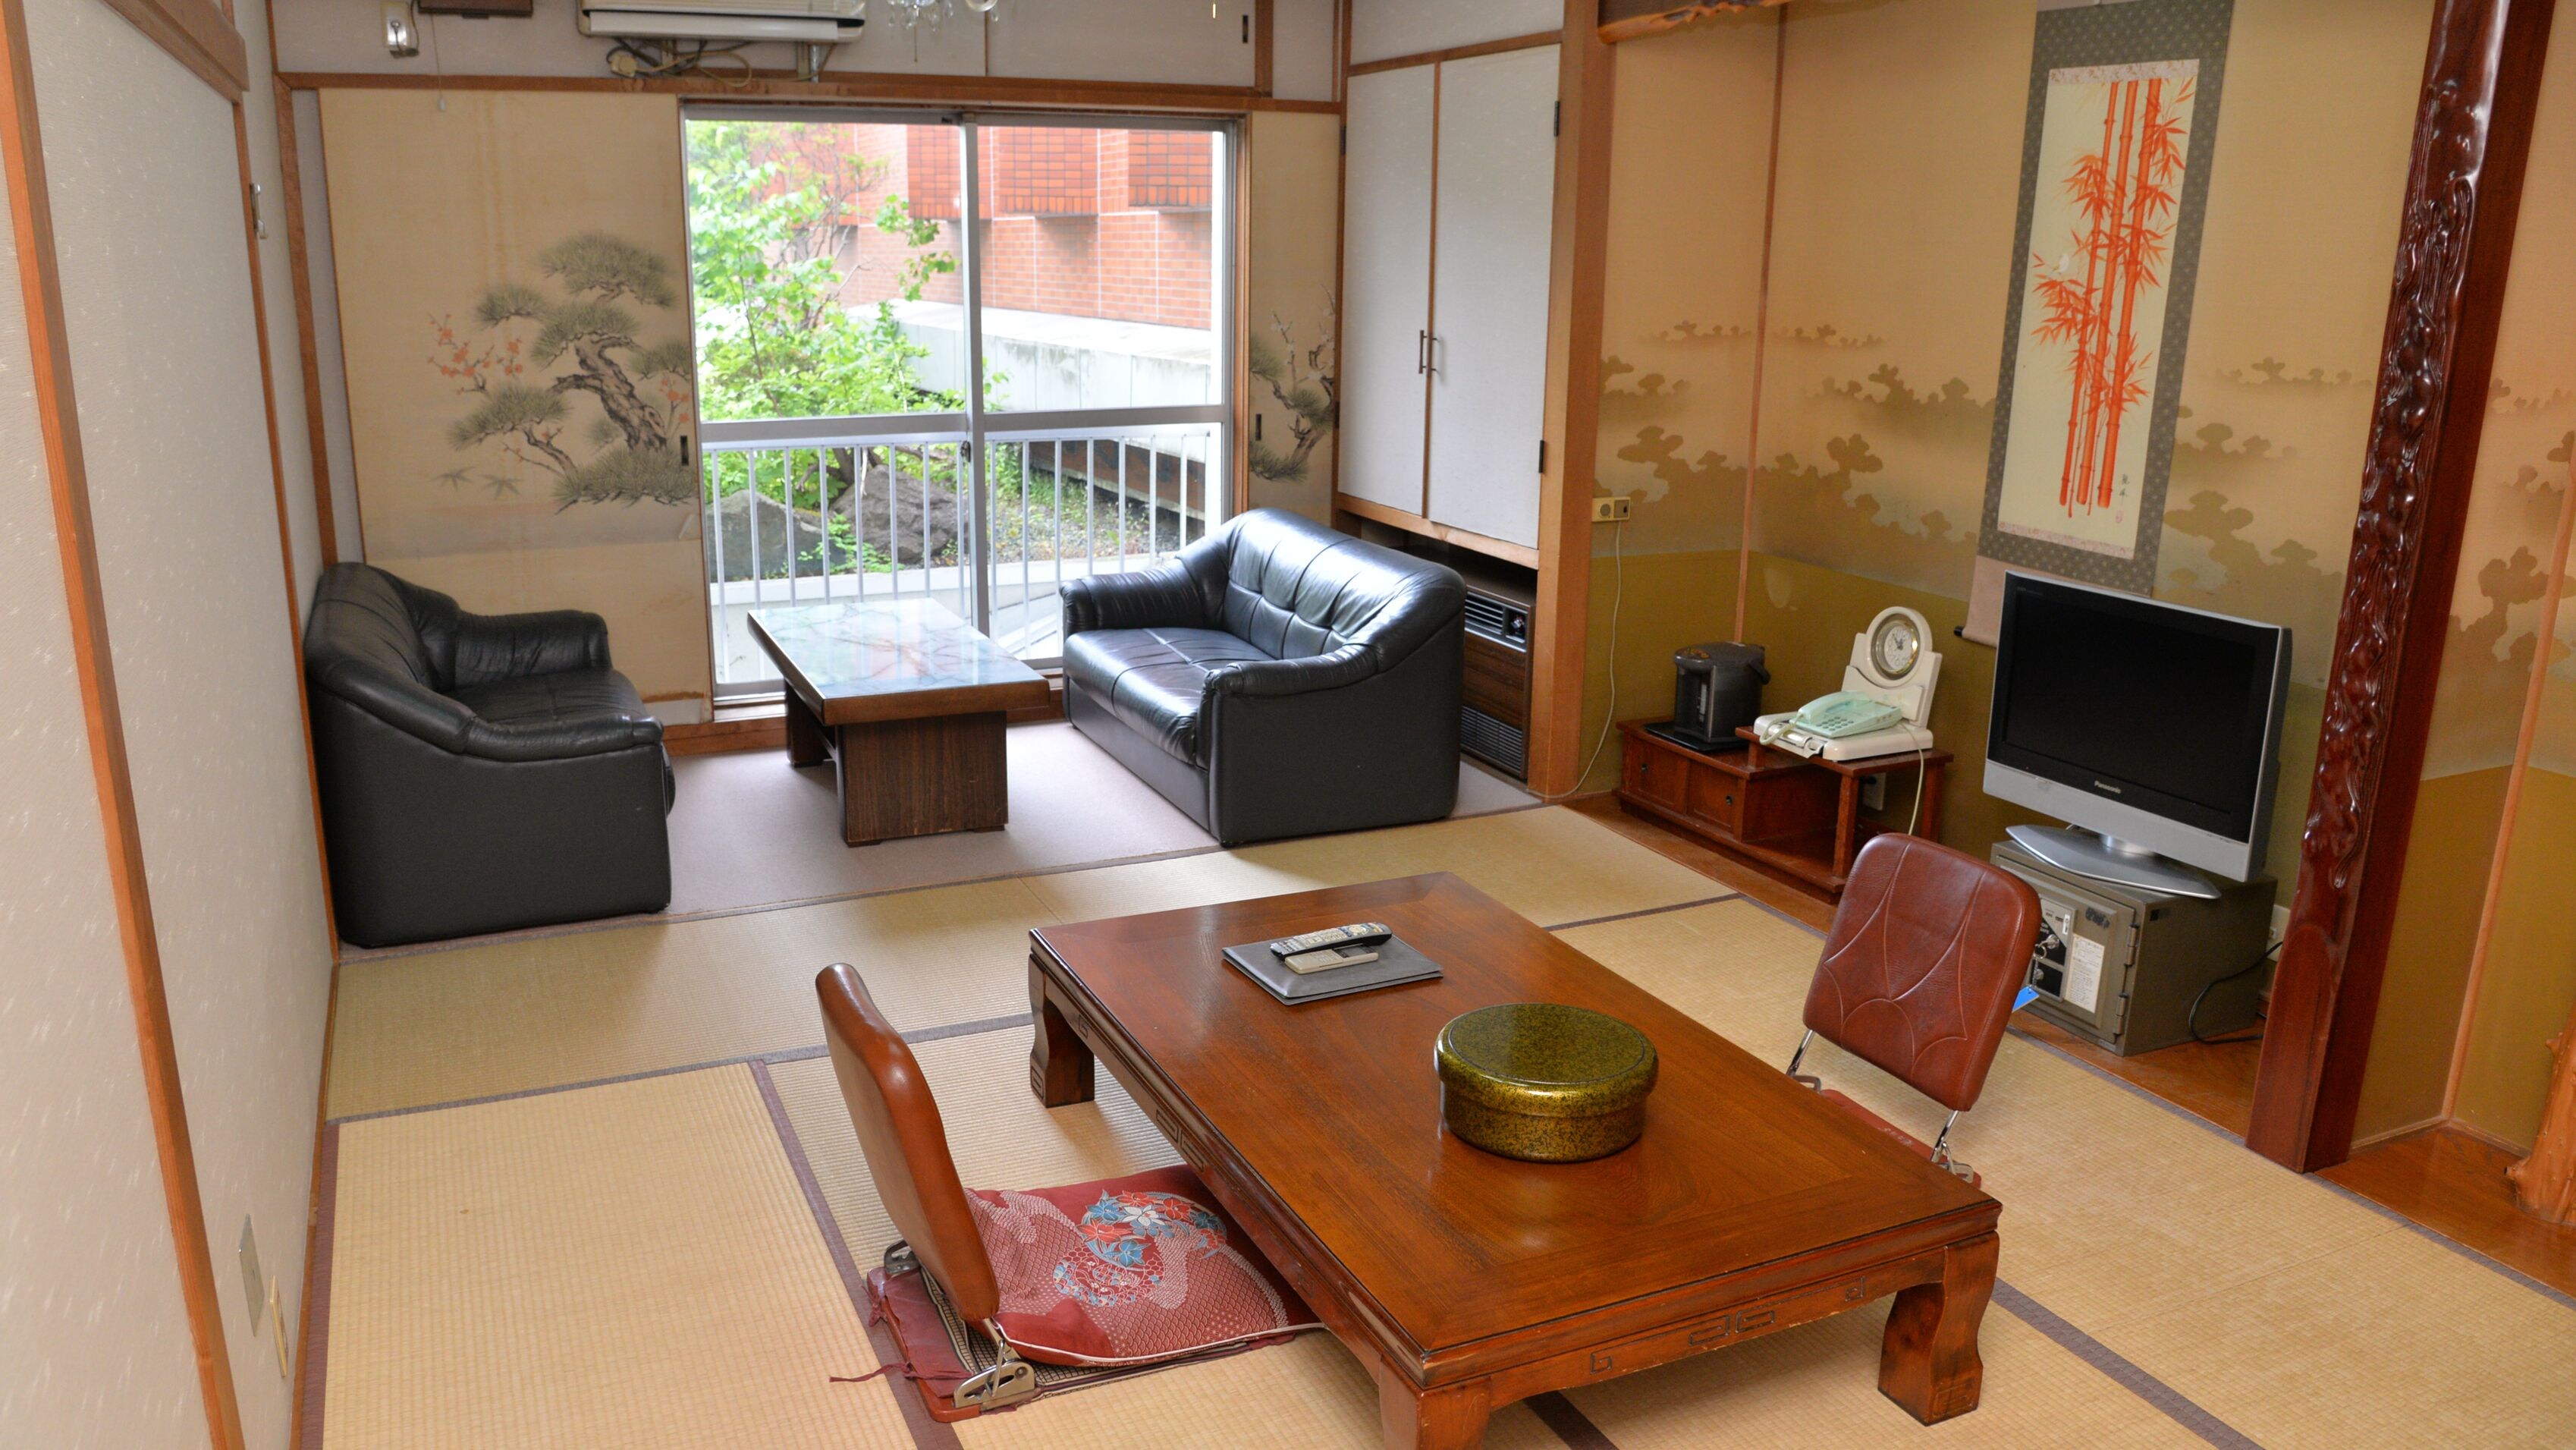 ◆附楼日式房间8-12张榻榻米宽敞的日式房间似乎可以治愈工作和旅行的疲惫。